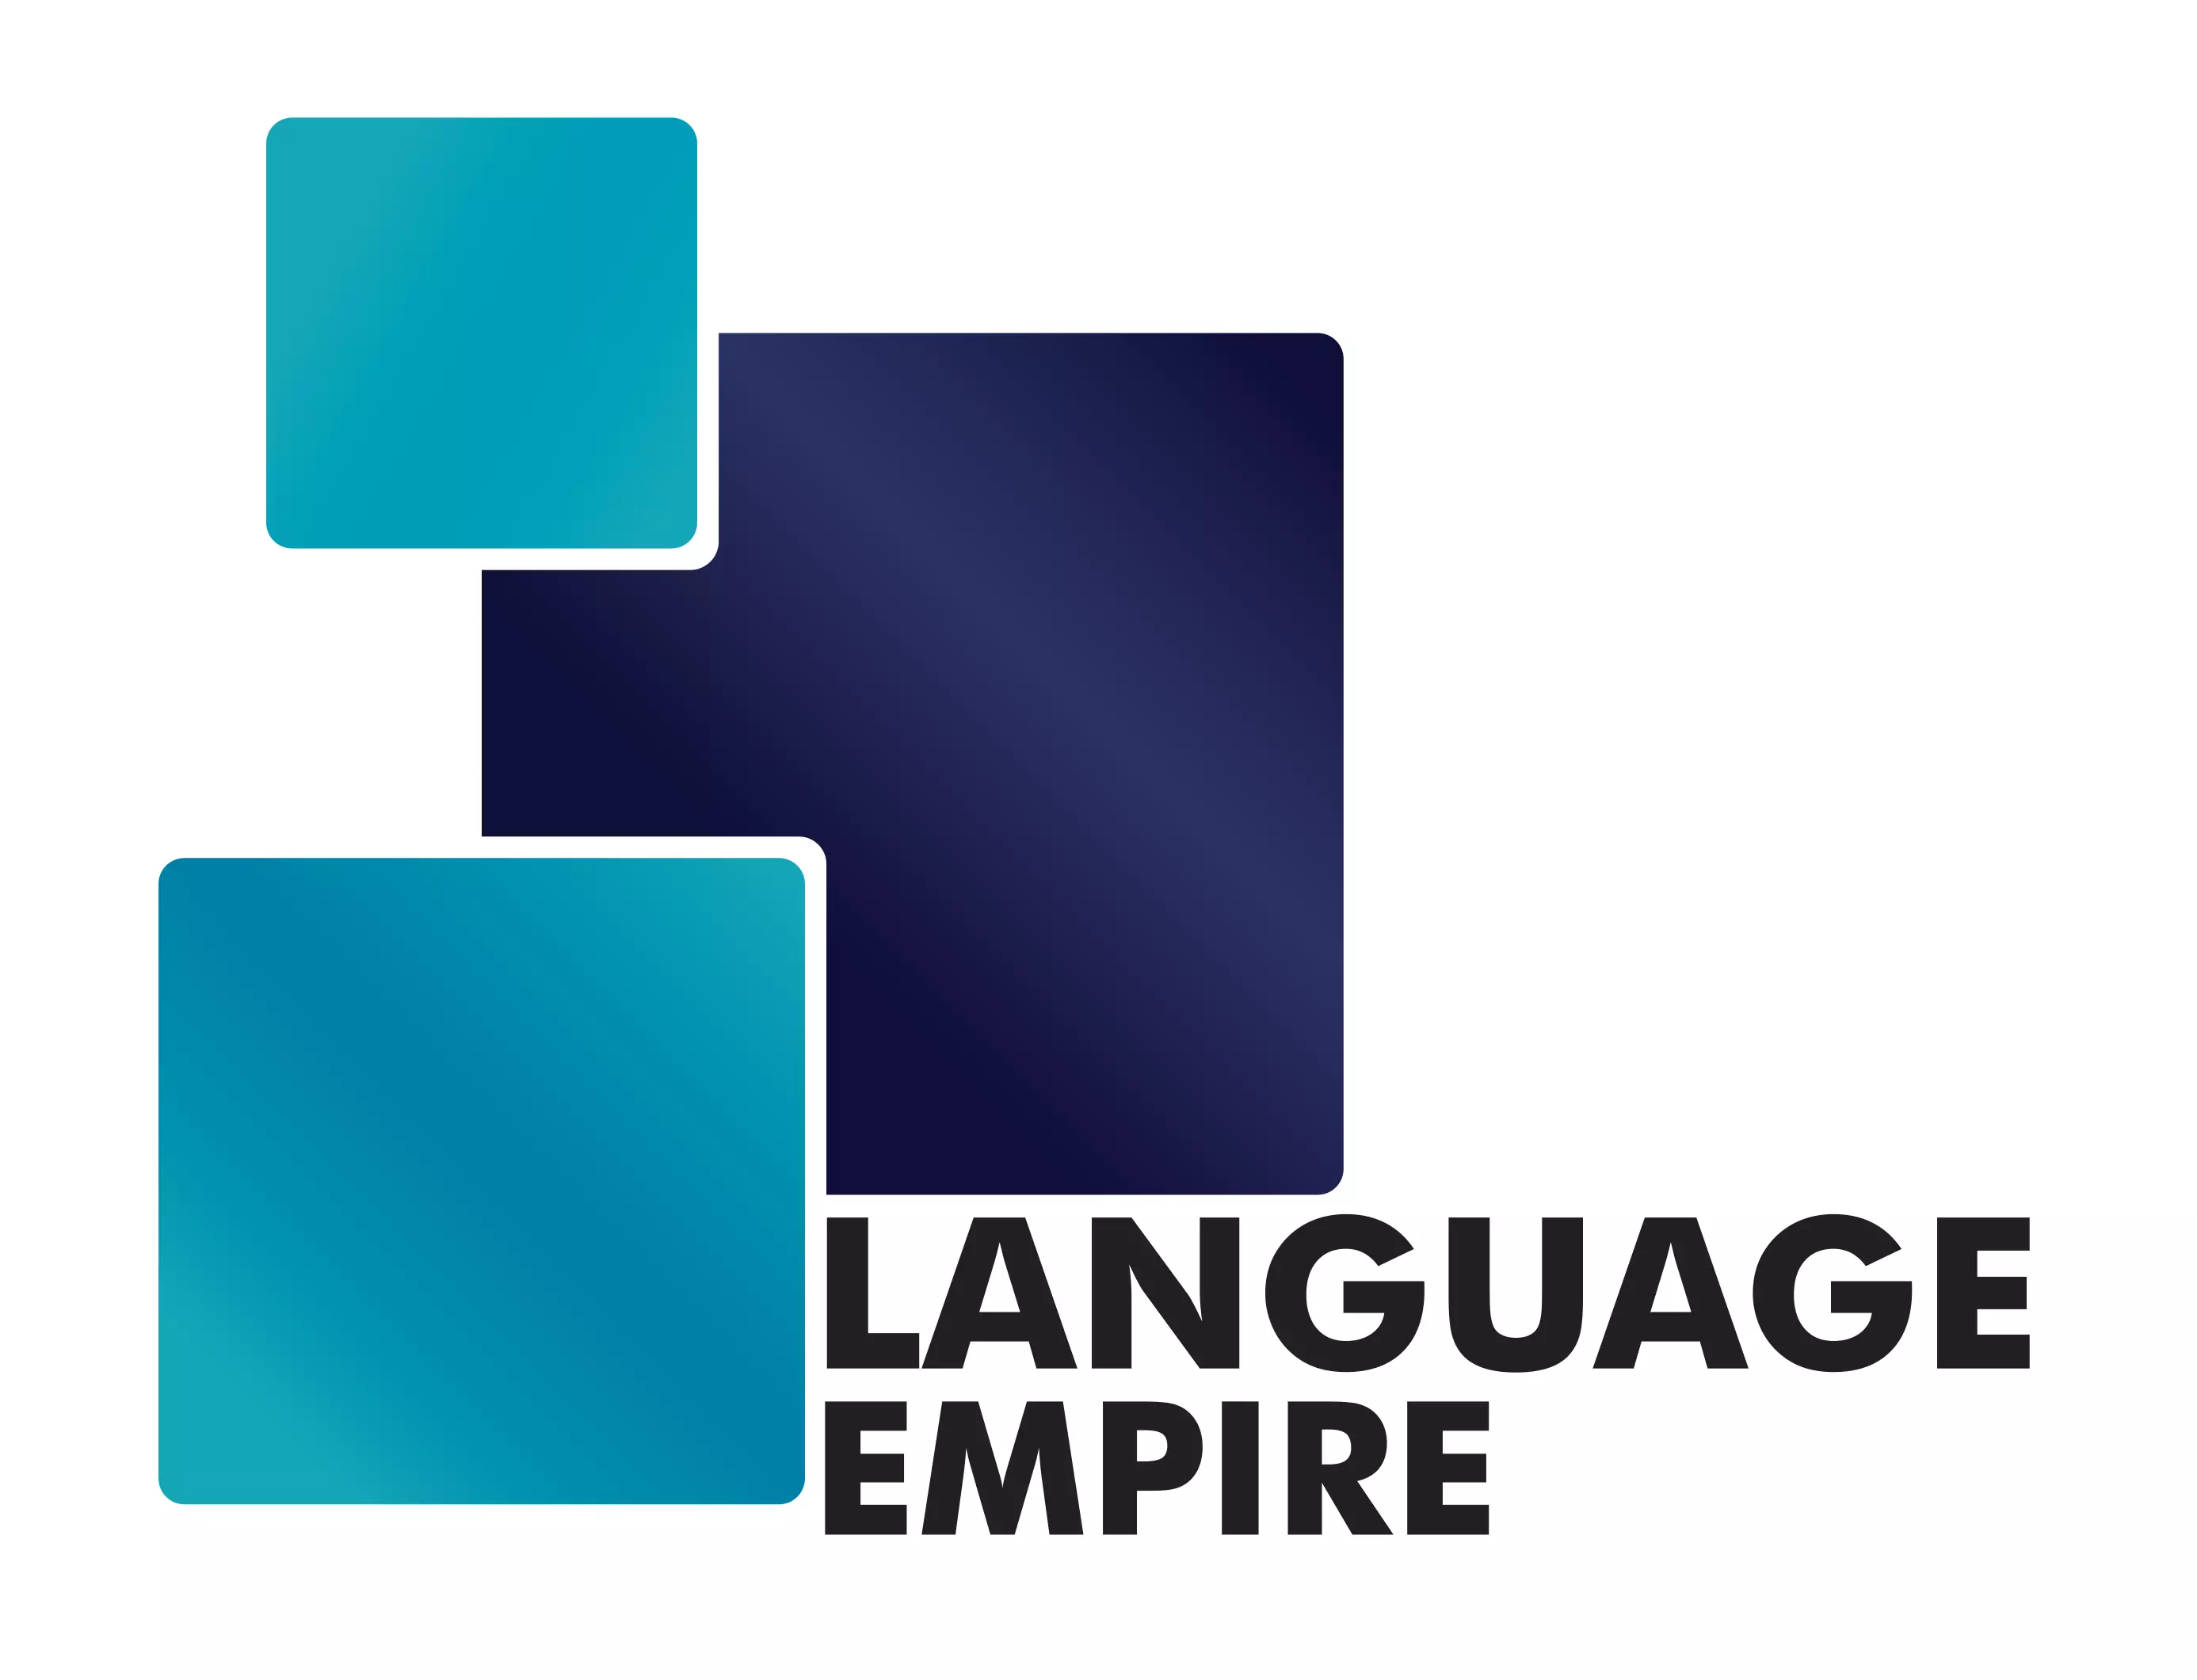 szkolenia językowe dla firm Business English language empire 